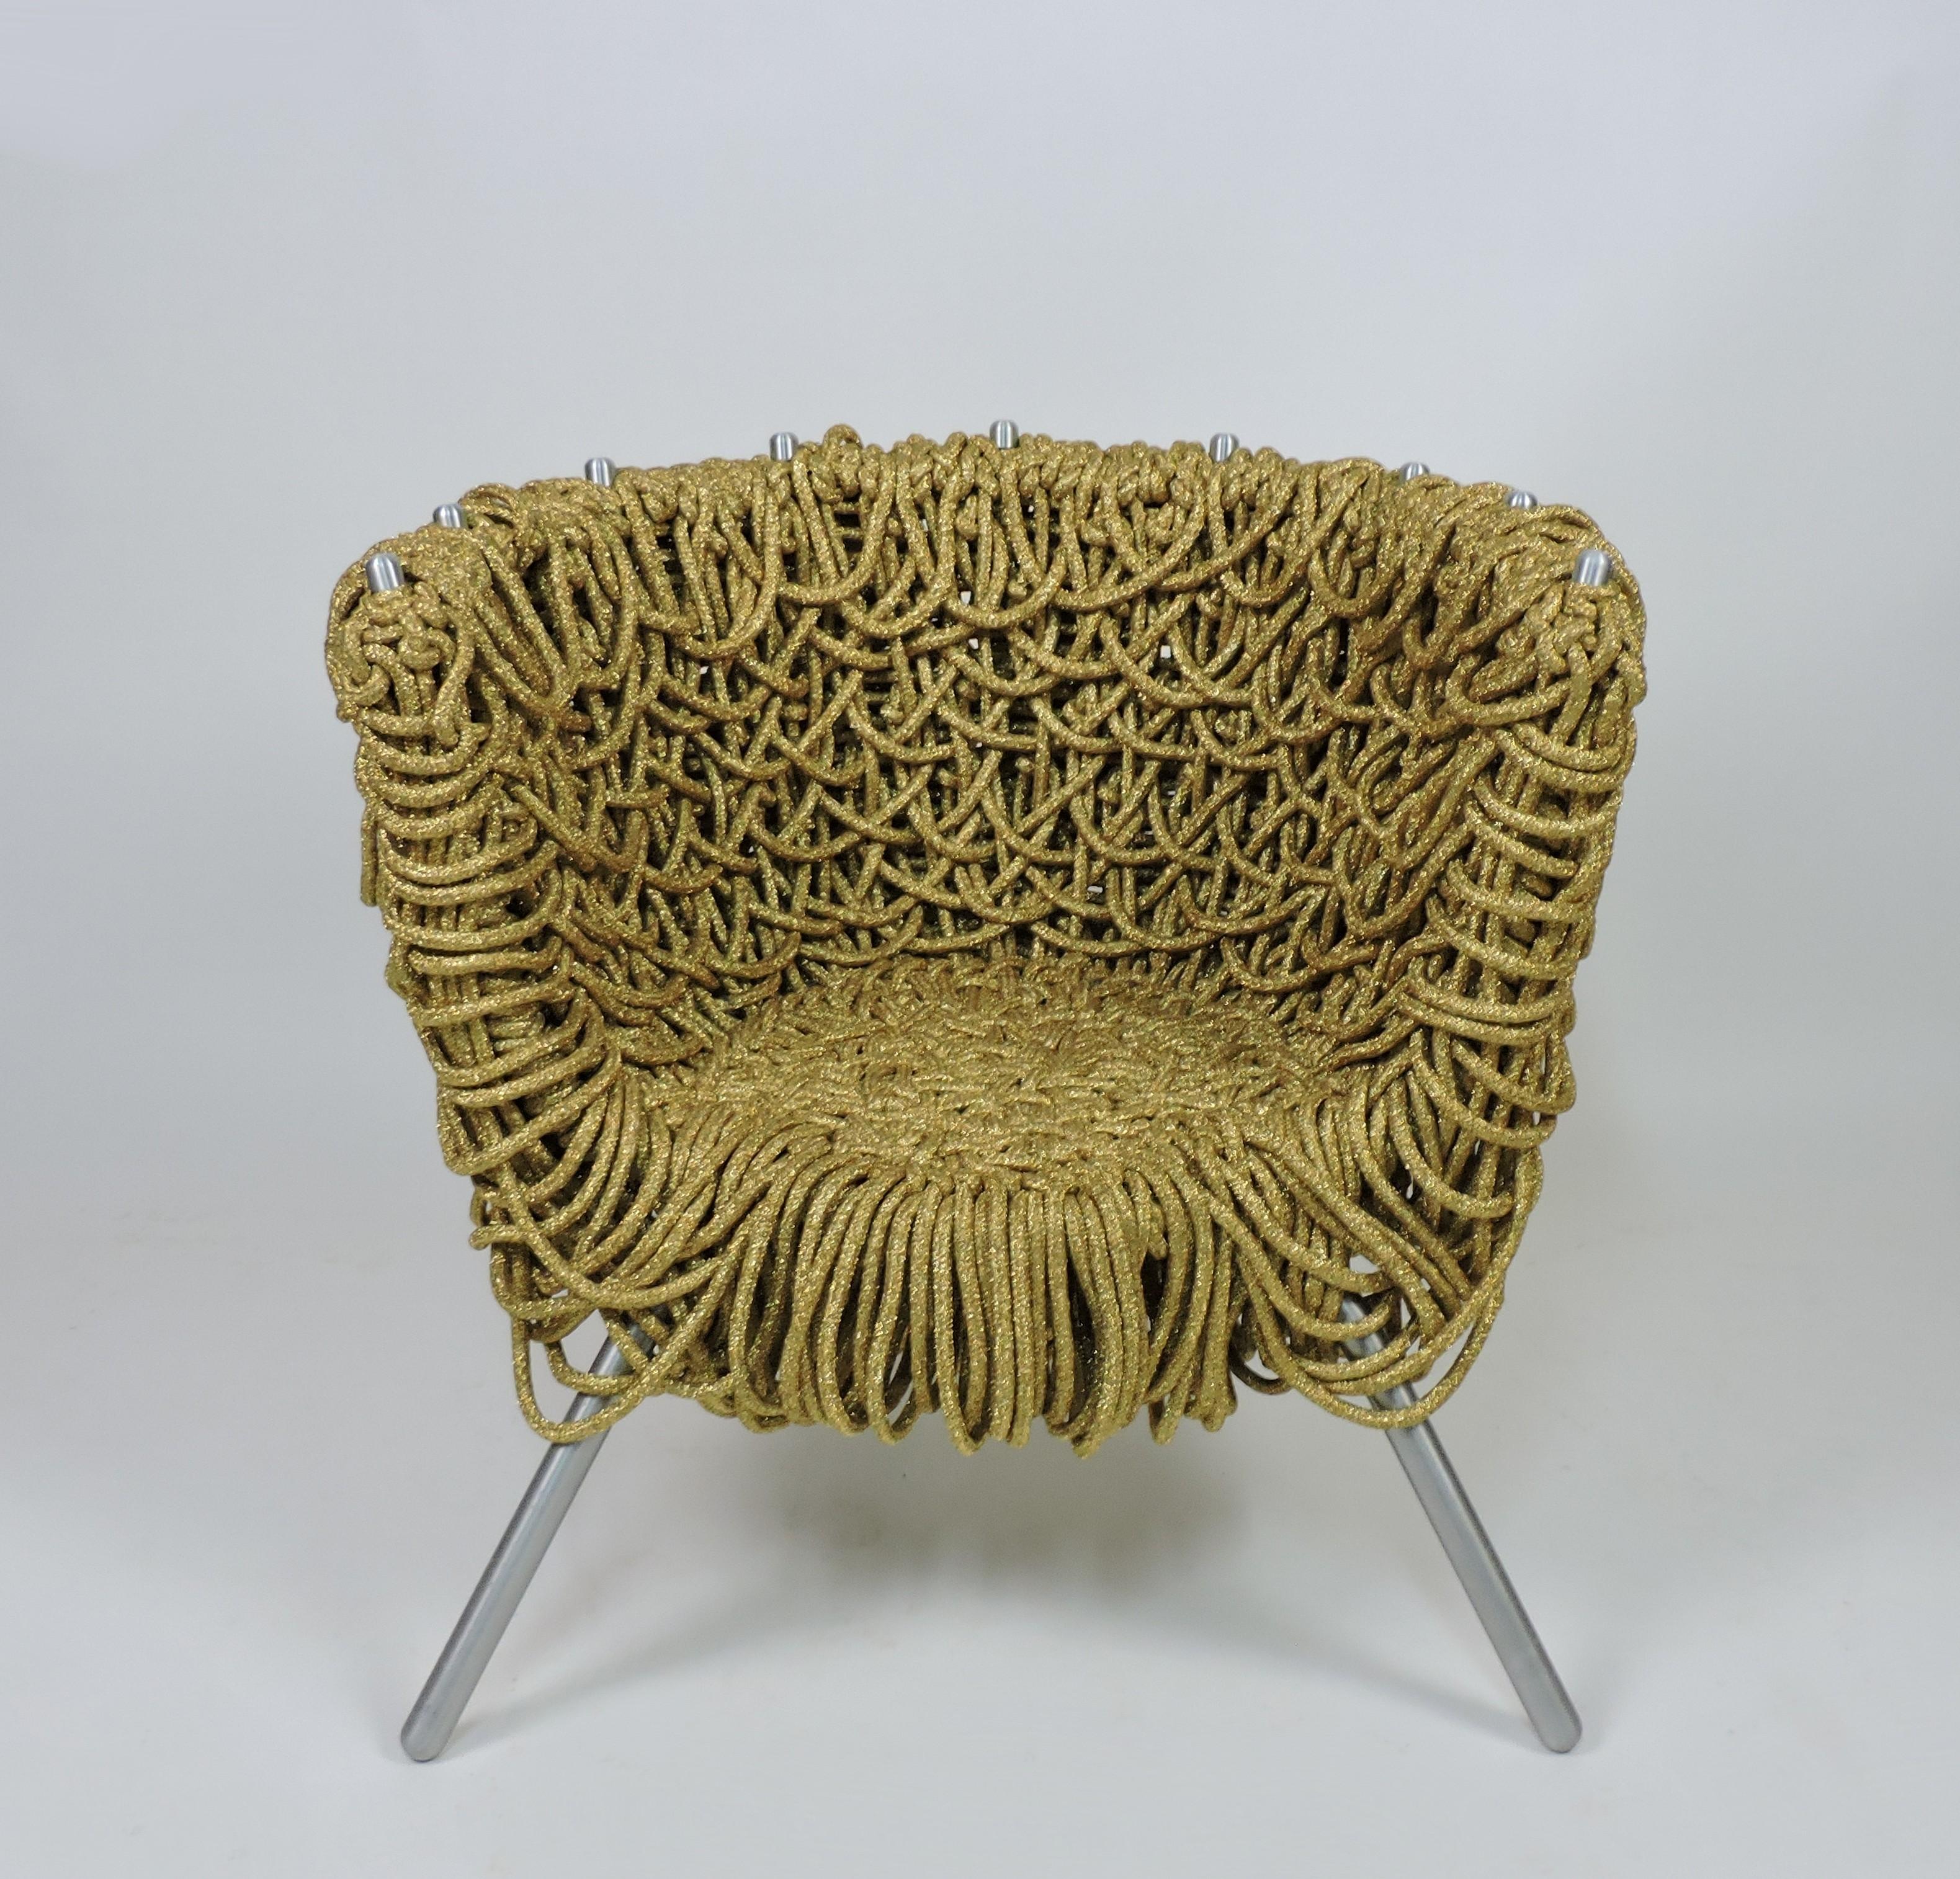 Einzigartiger und ikonischer Sessel, entworfen von den bekannten brasilianischen Designern Fernando und Humberto Campana,                und in Italien von Edra hergestellt. Dieser Stuhl ist aus goldfarbenem Metallband, Eisen und Aluminium